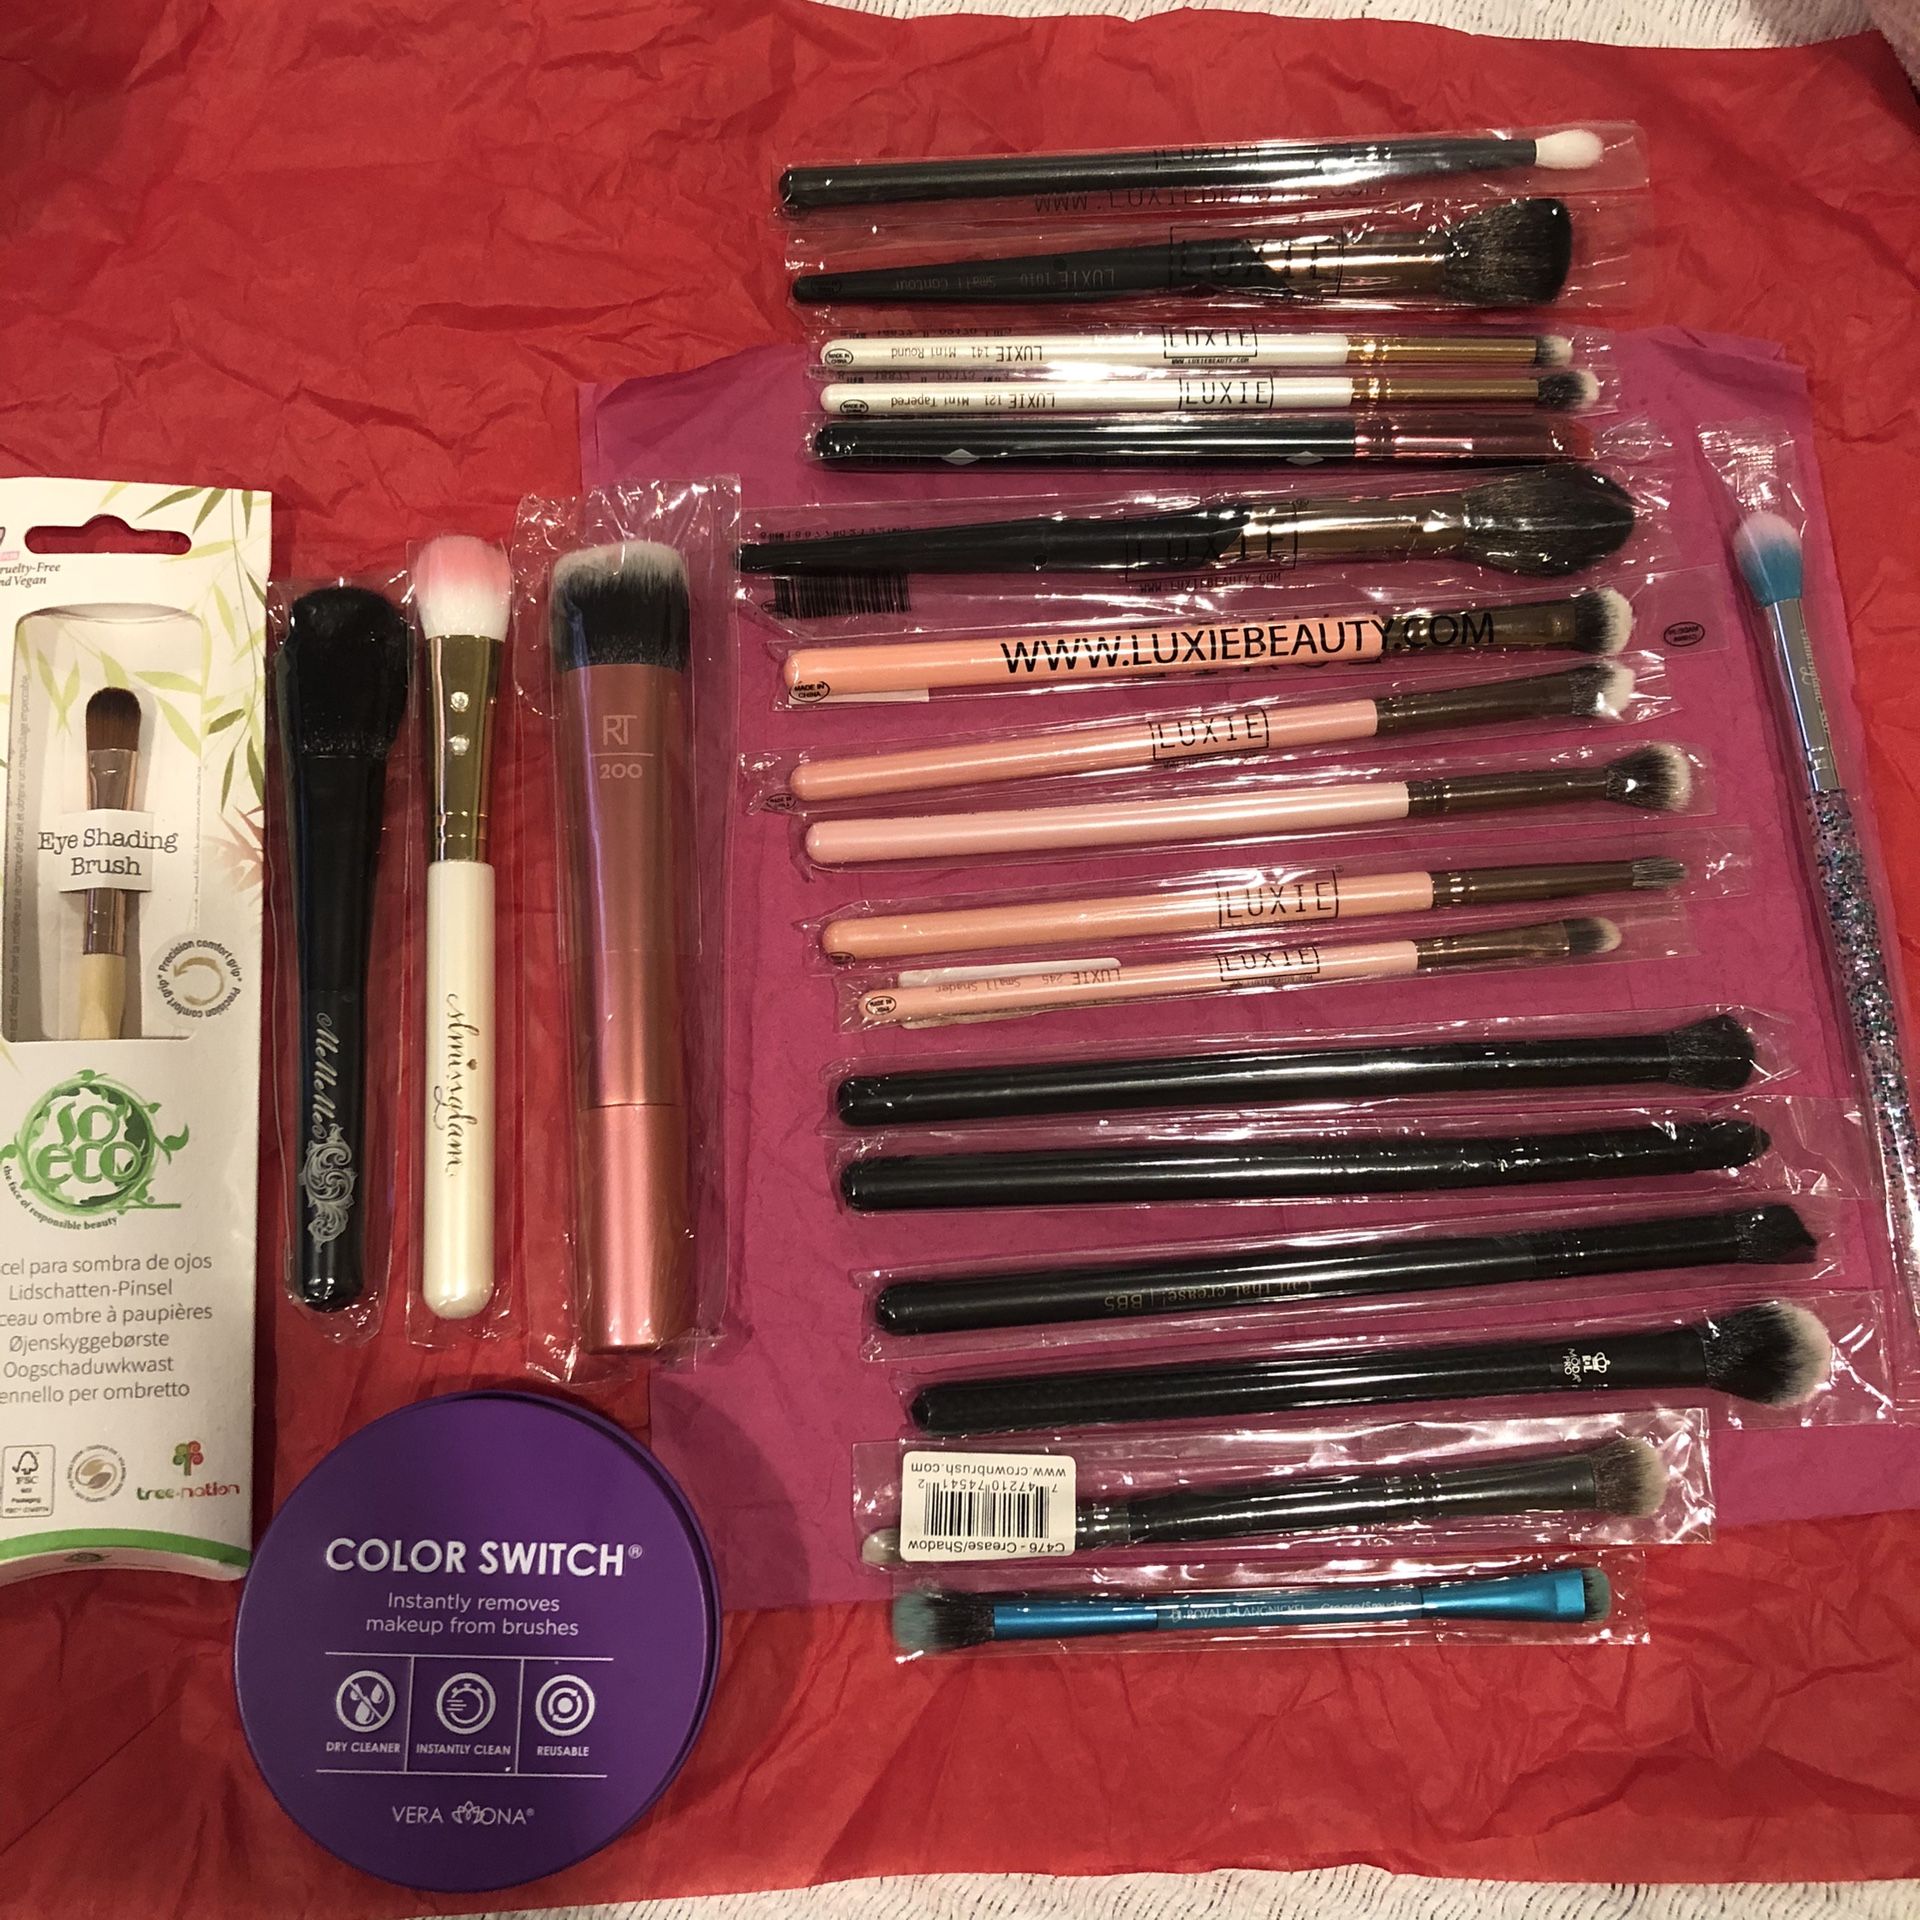 Makeup brushes bundle!!! $210.00 value